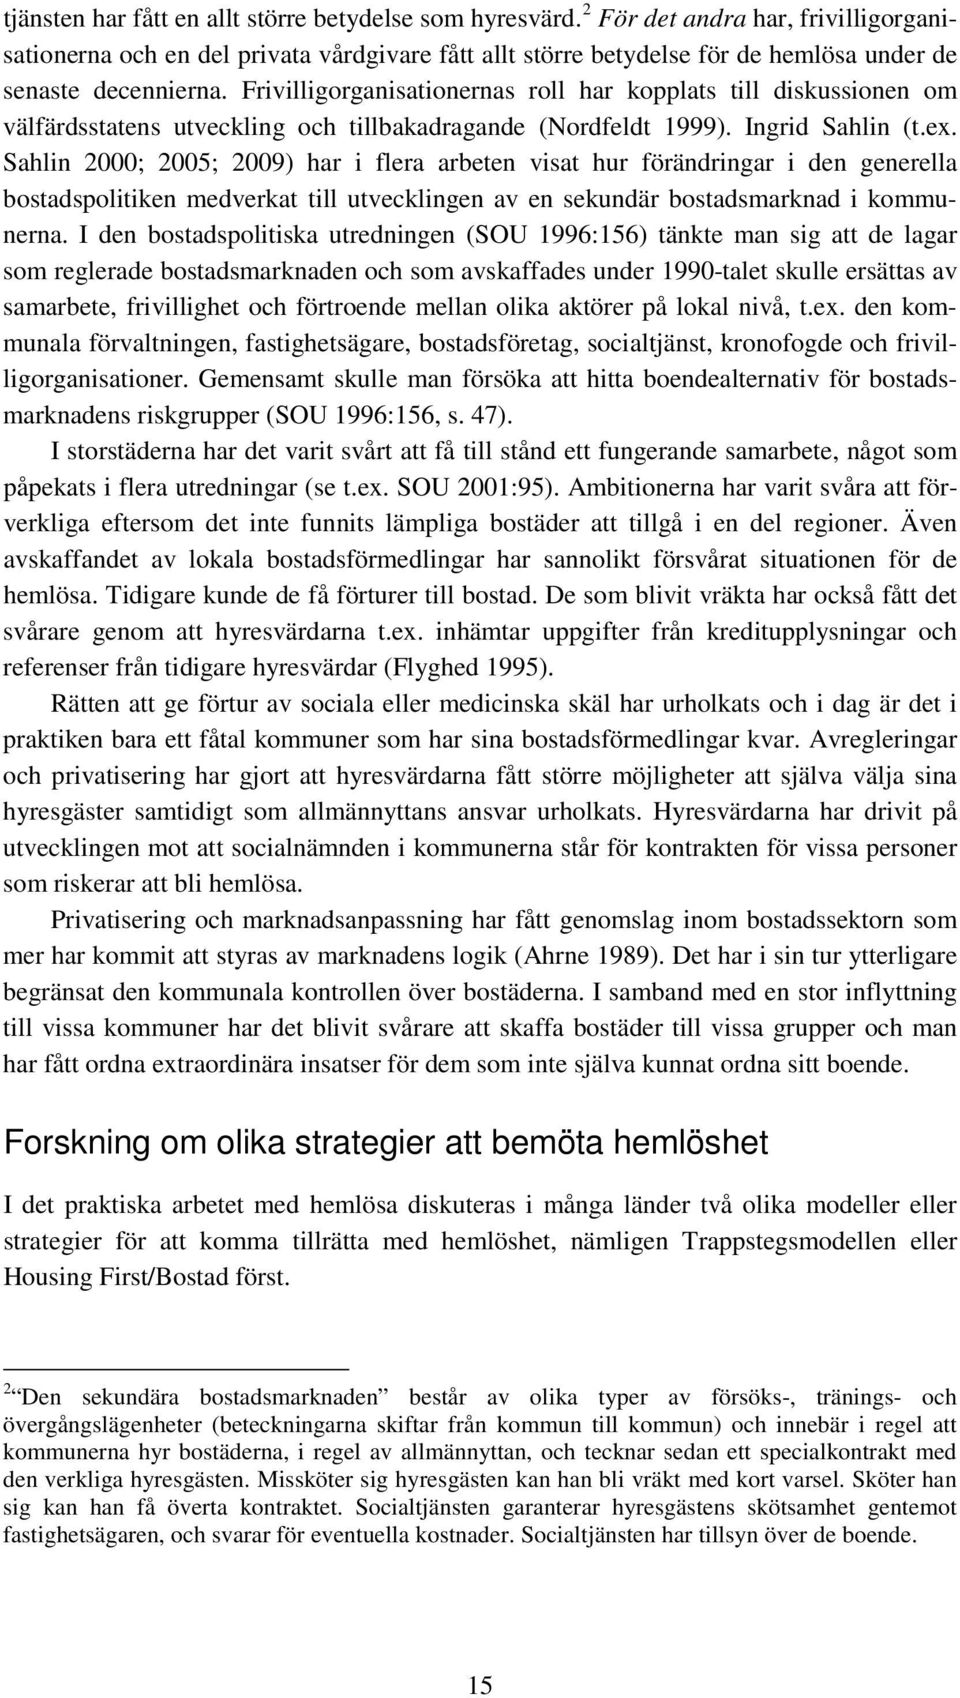 Frivilligorganisationernas roll har kopplats till diskussionen om välfärdsstatens utveckling och tillbakadragande (Nordfeldt 1999). Ingrid Sahlin (t.ex.